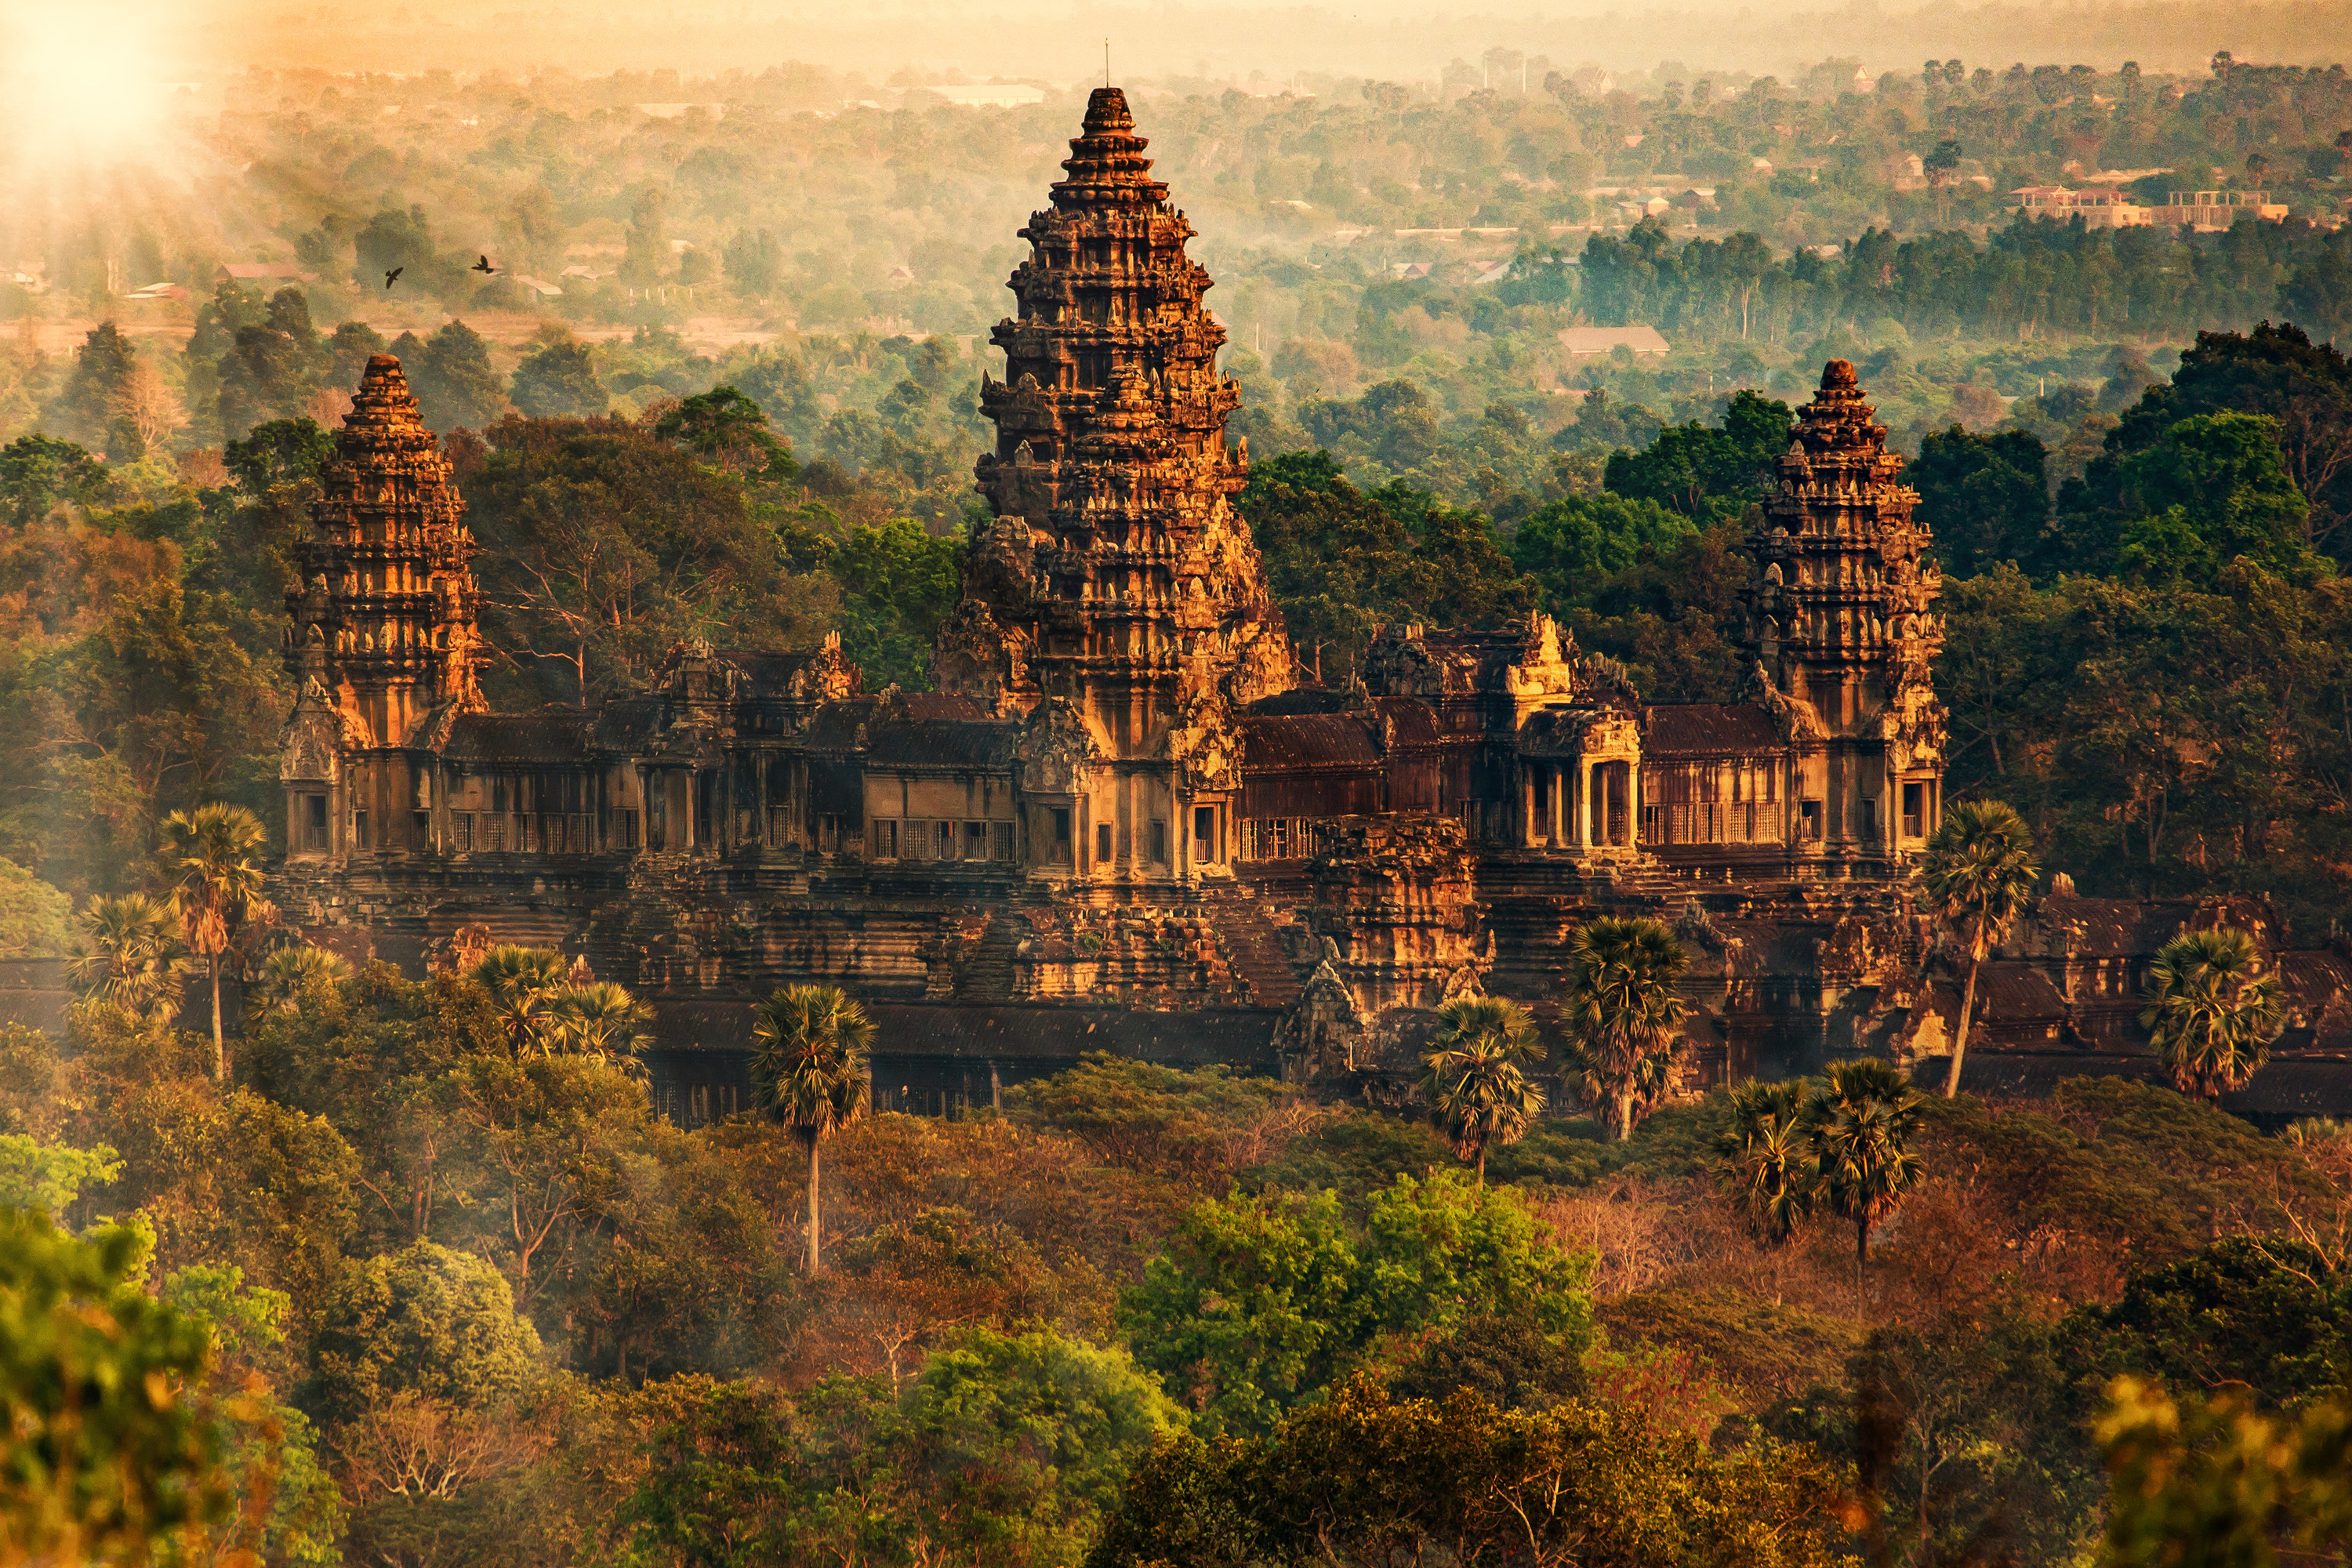 The buildings of Angkor Wat